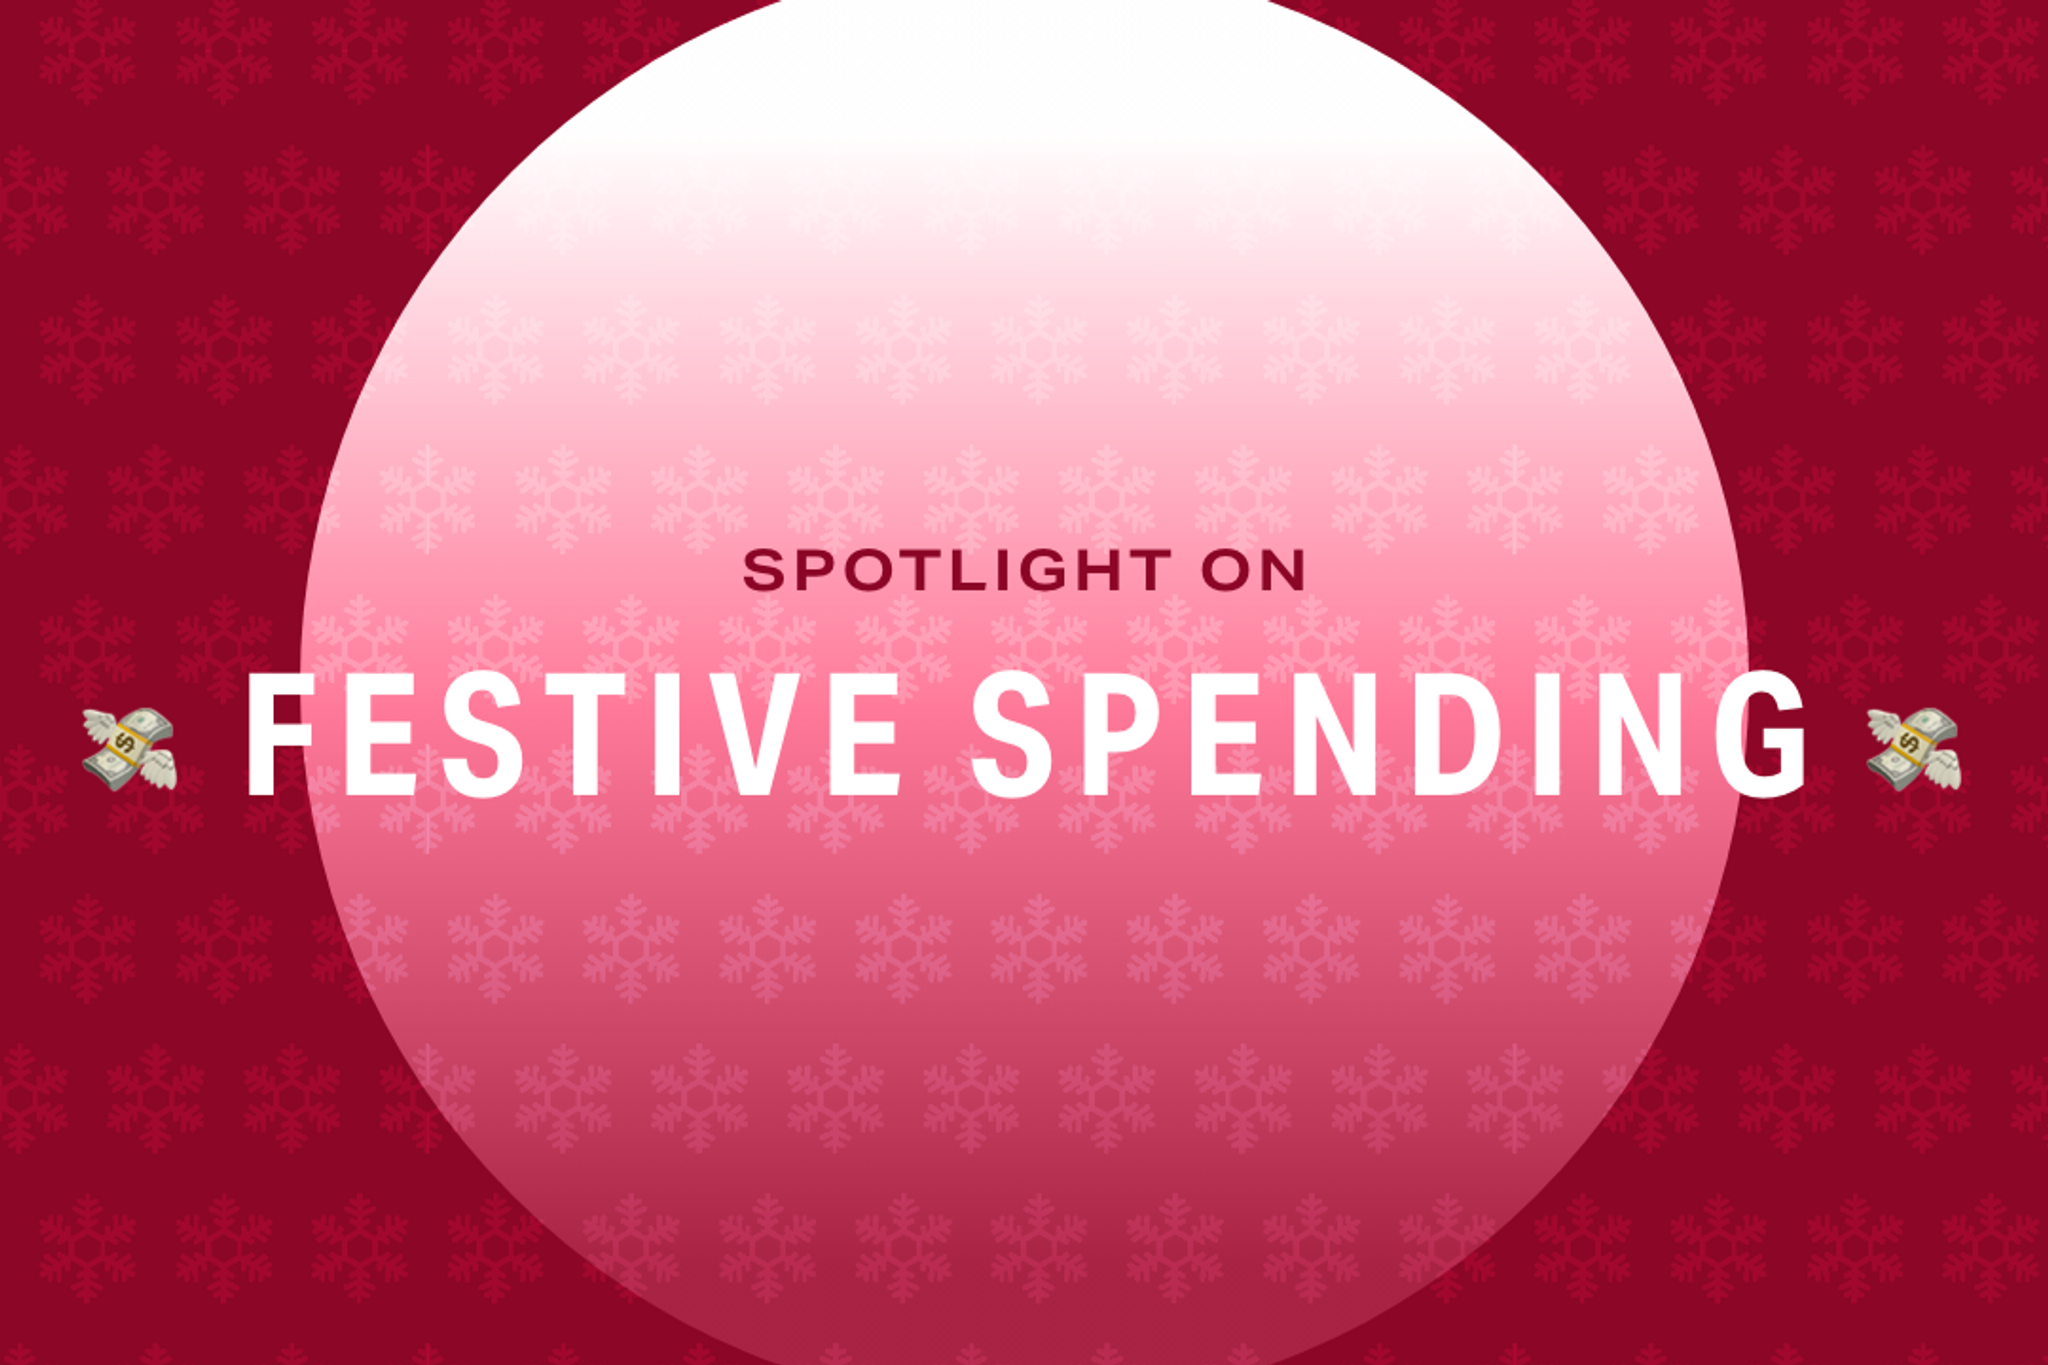 Festive Spending